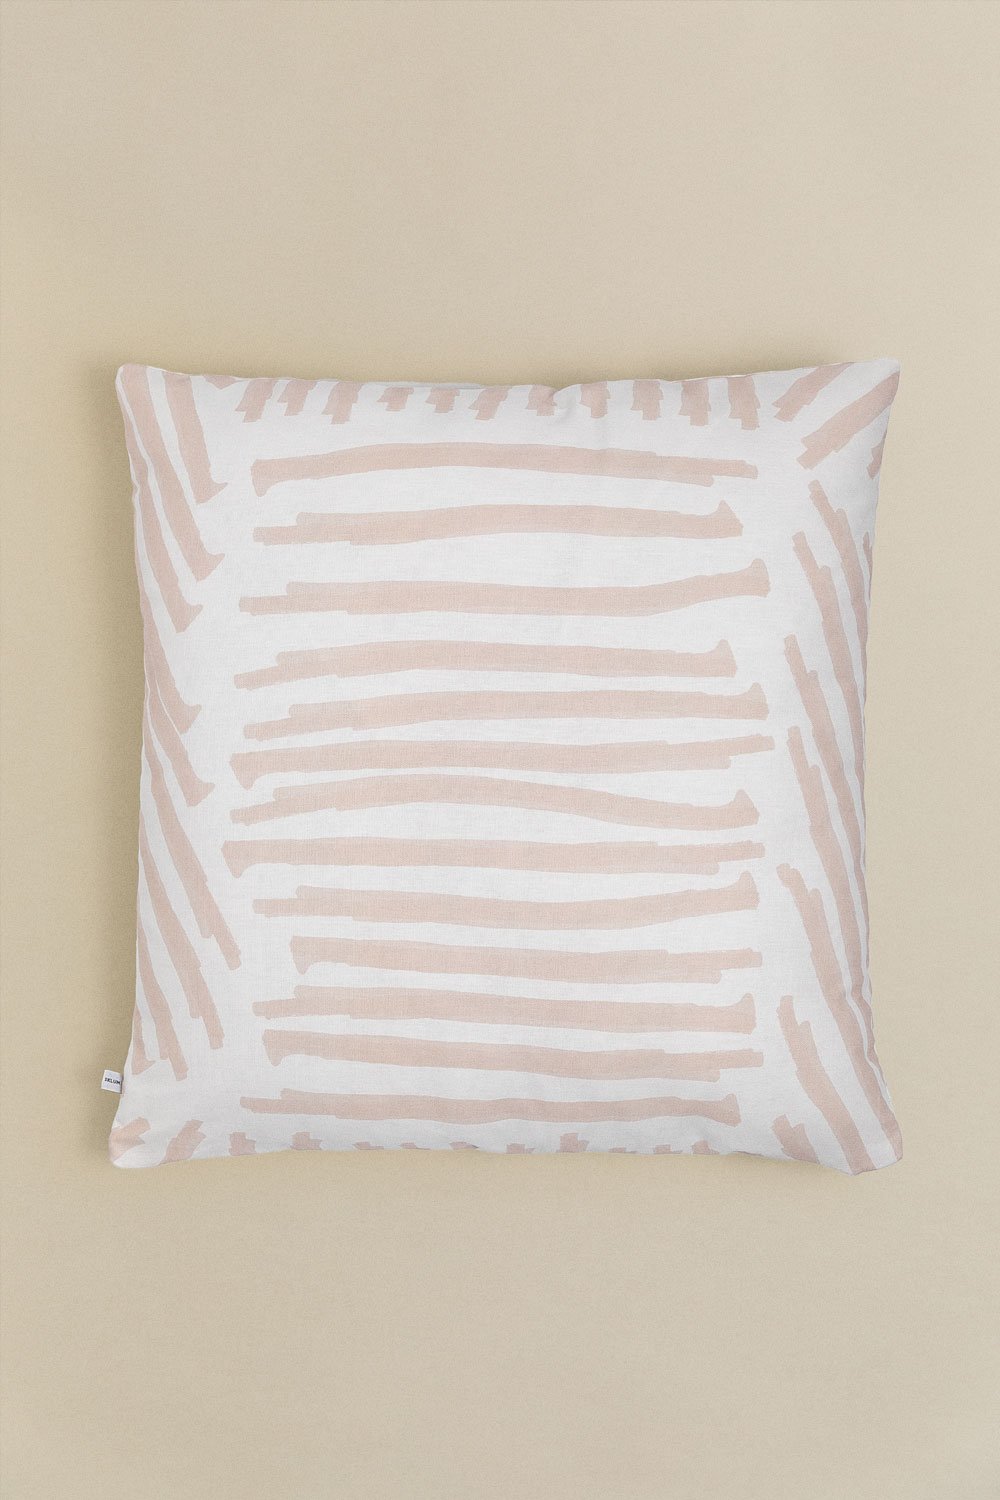 Fodera per cuscino quadrata in cotone (60x60 cm) Naina, immagine della galleria 1